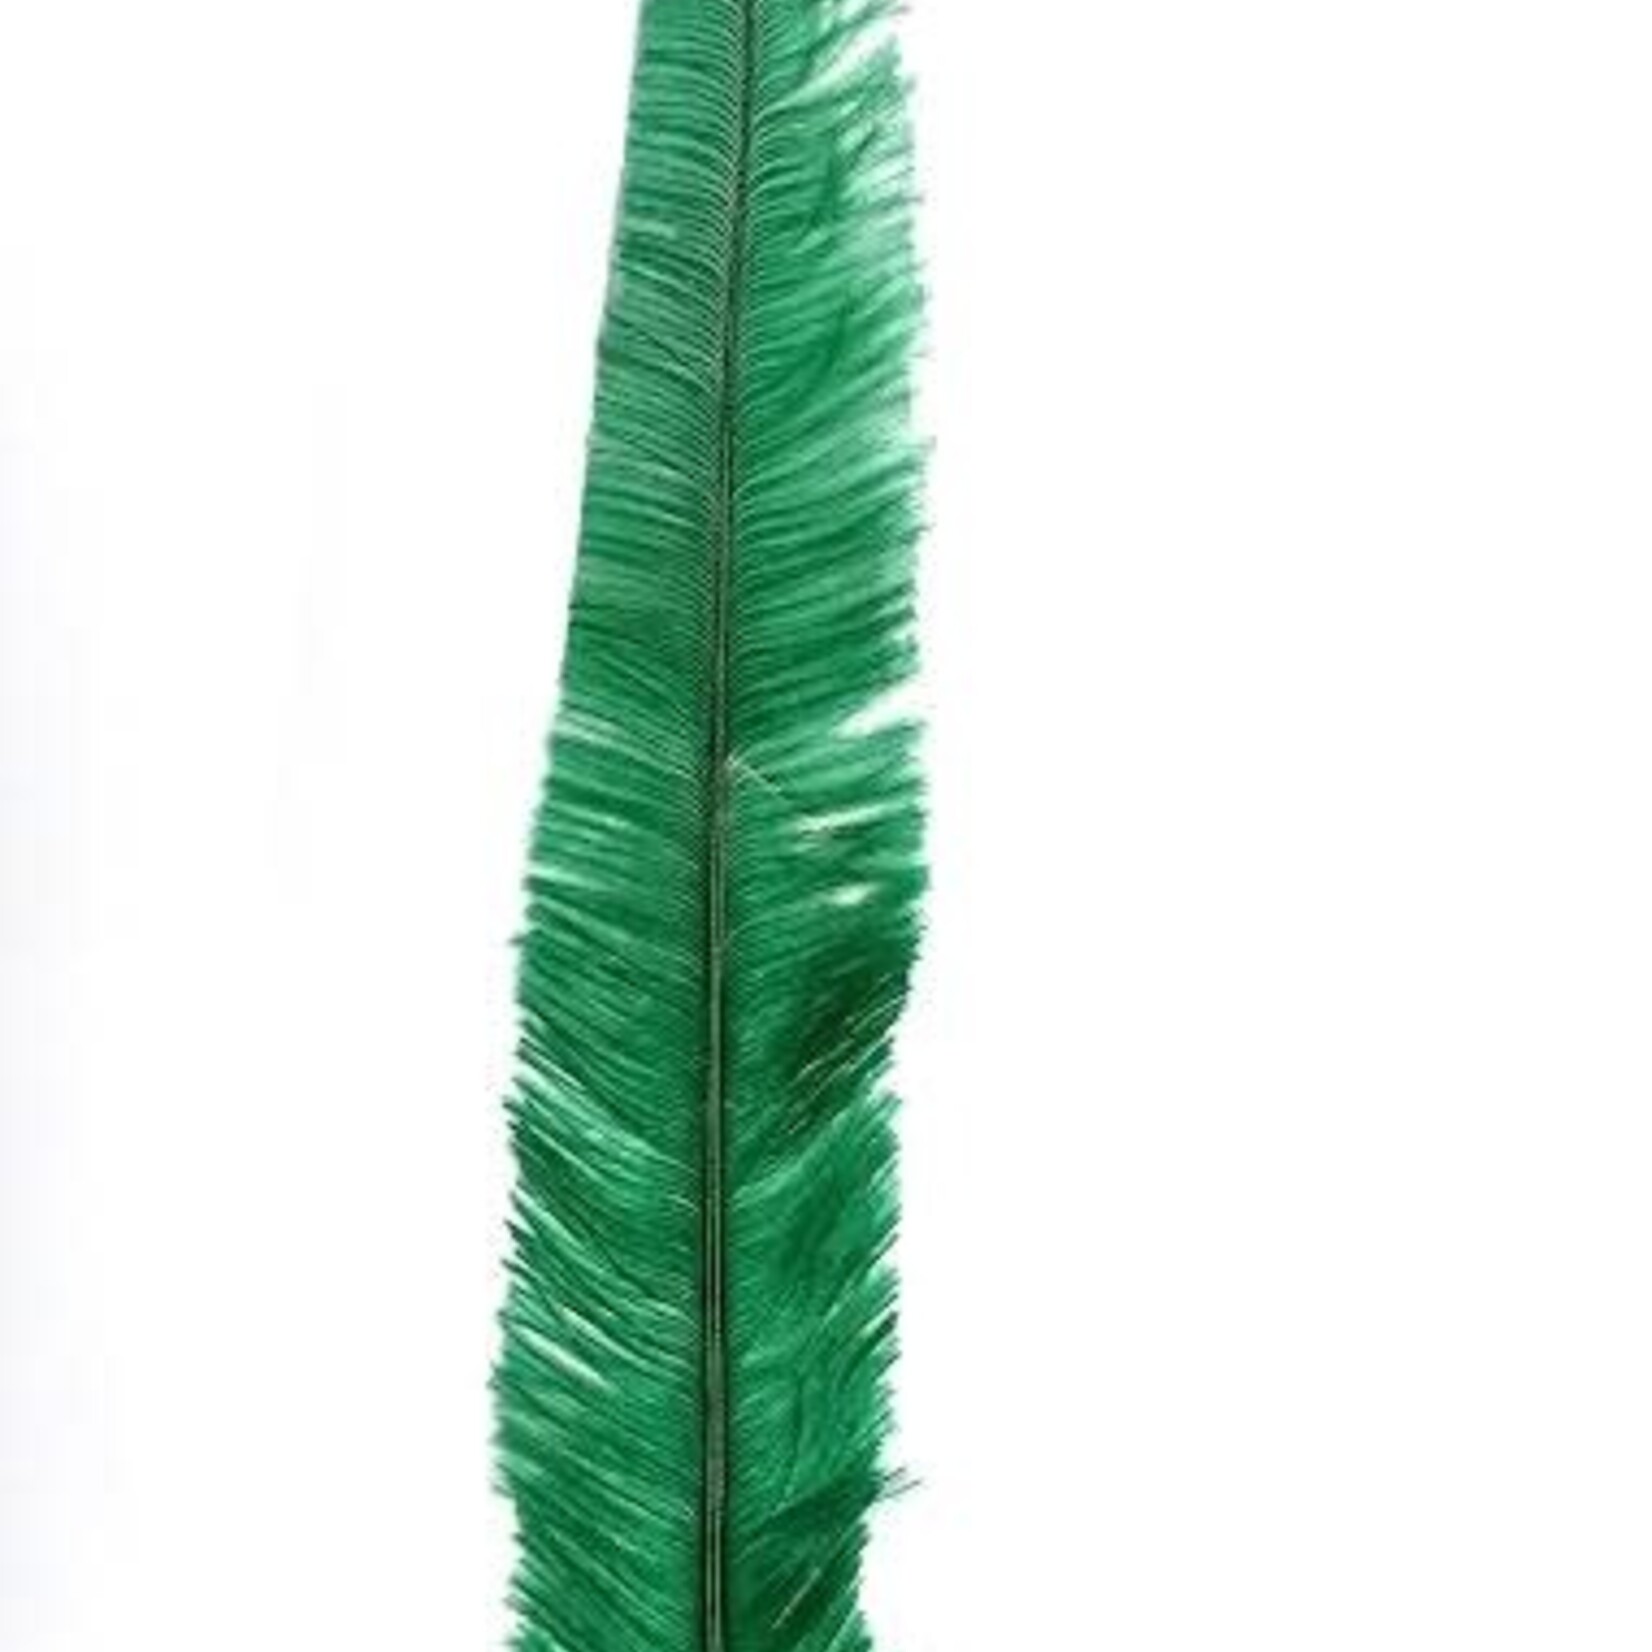 Nandu Feathers 20-25 Inch